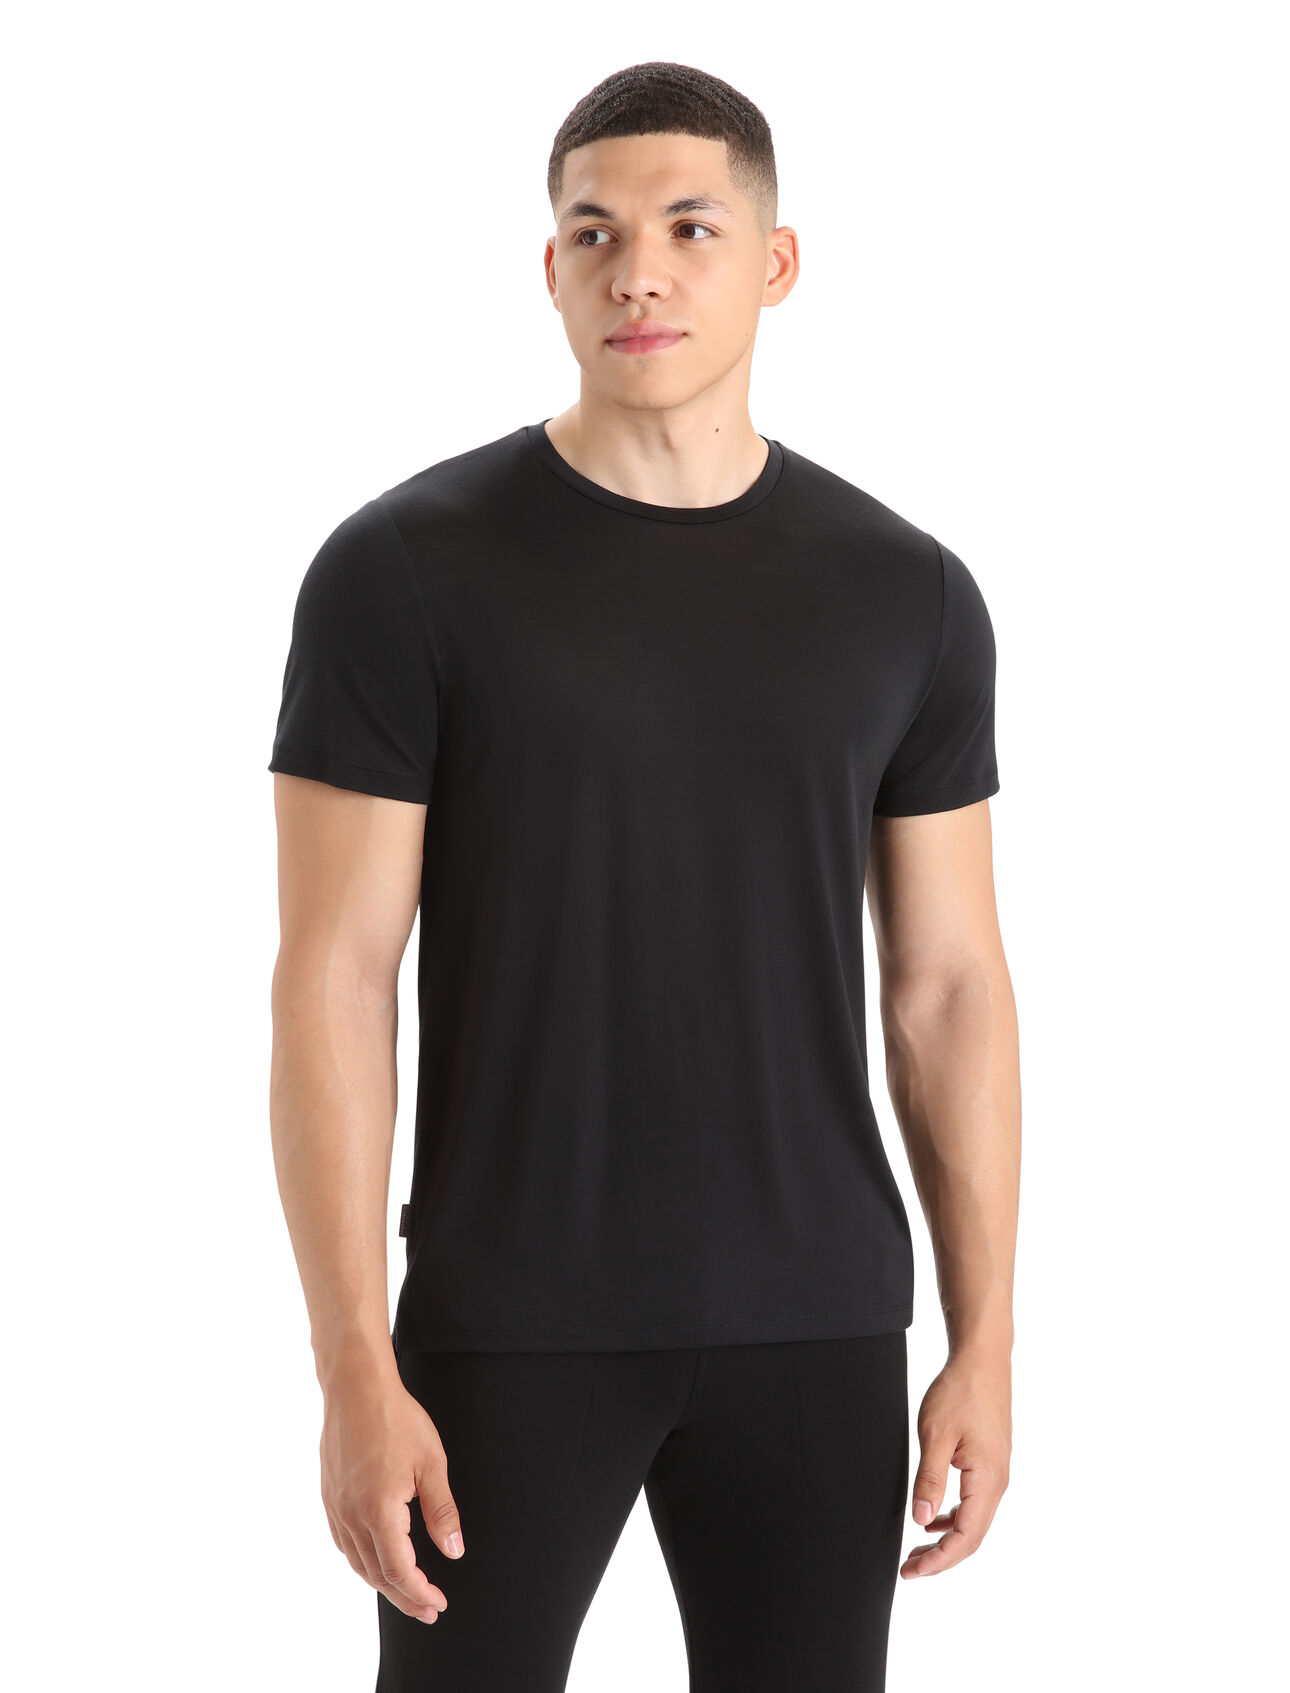 T-shirt Sphere II en mérinos Hommes En mélange de mérinos fait avec notre jersey Cool-Lite™, le t-shirt Sphere II vous procure une respirabilité, une résistance aux odeurs et un confort naturels. 